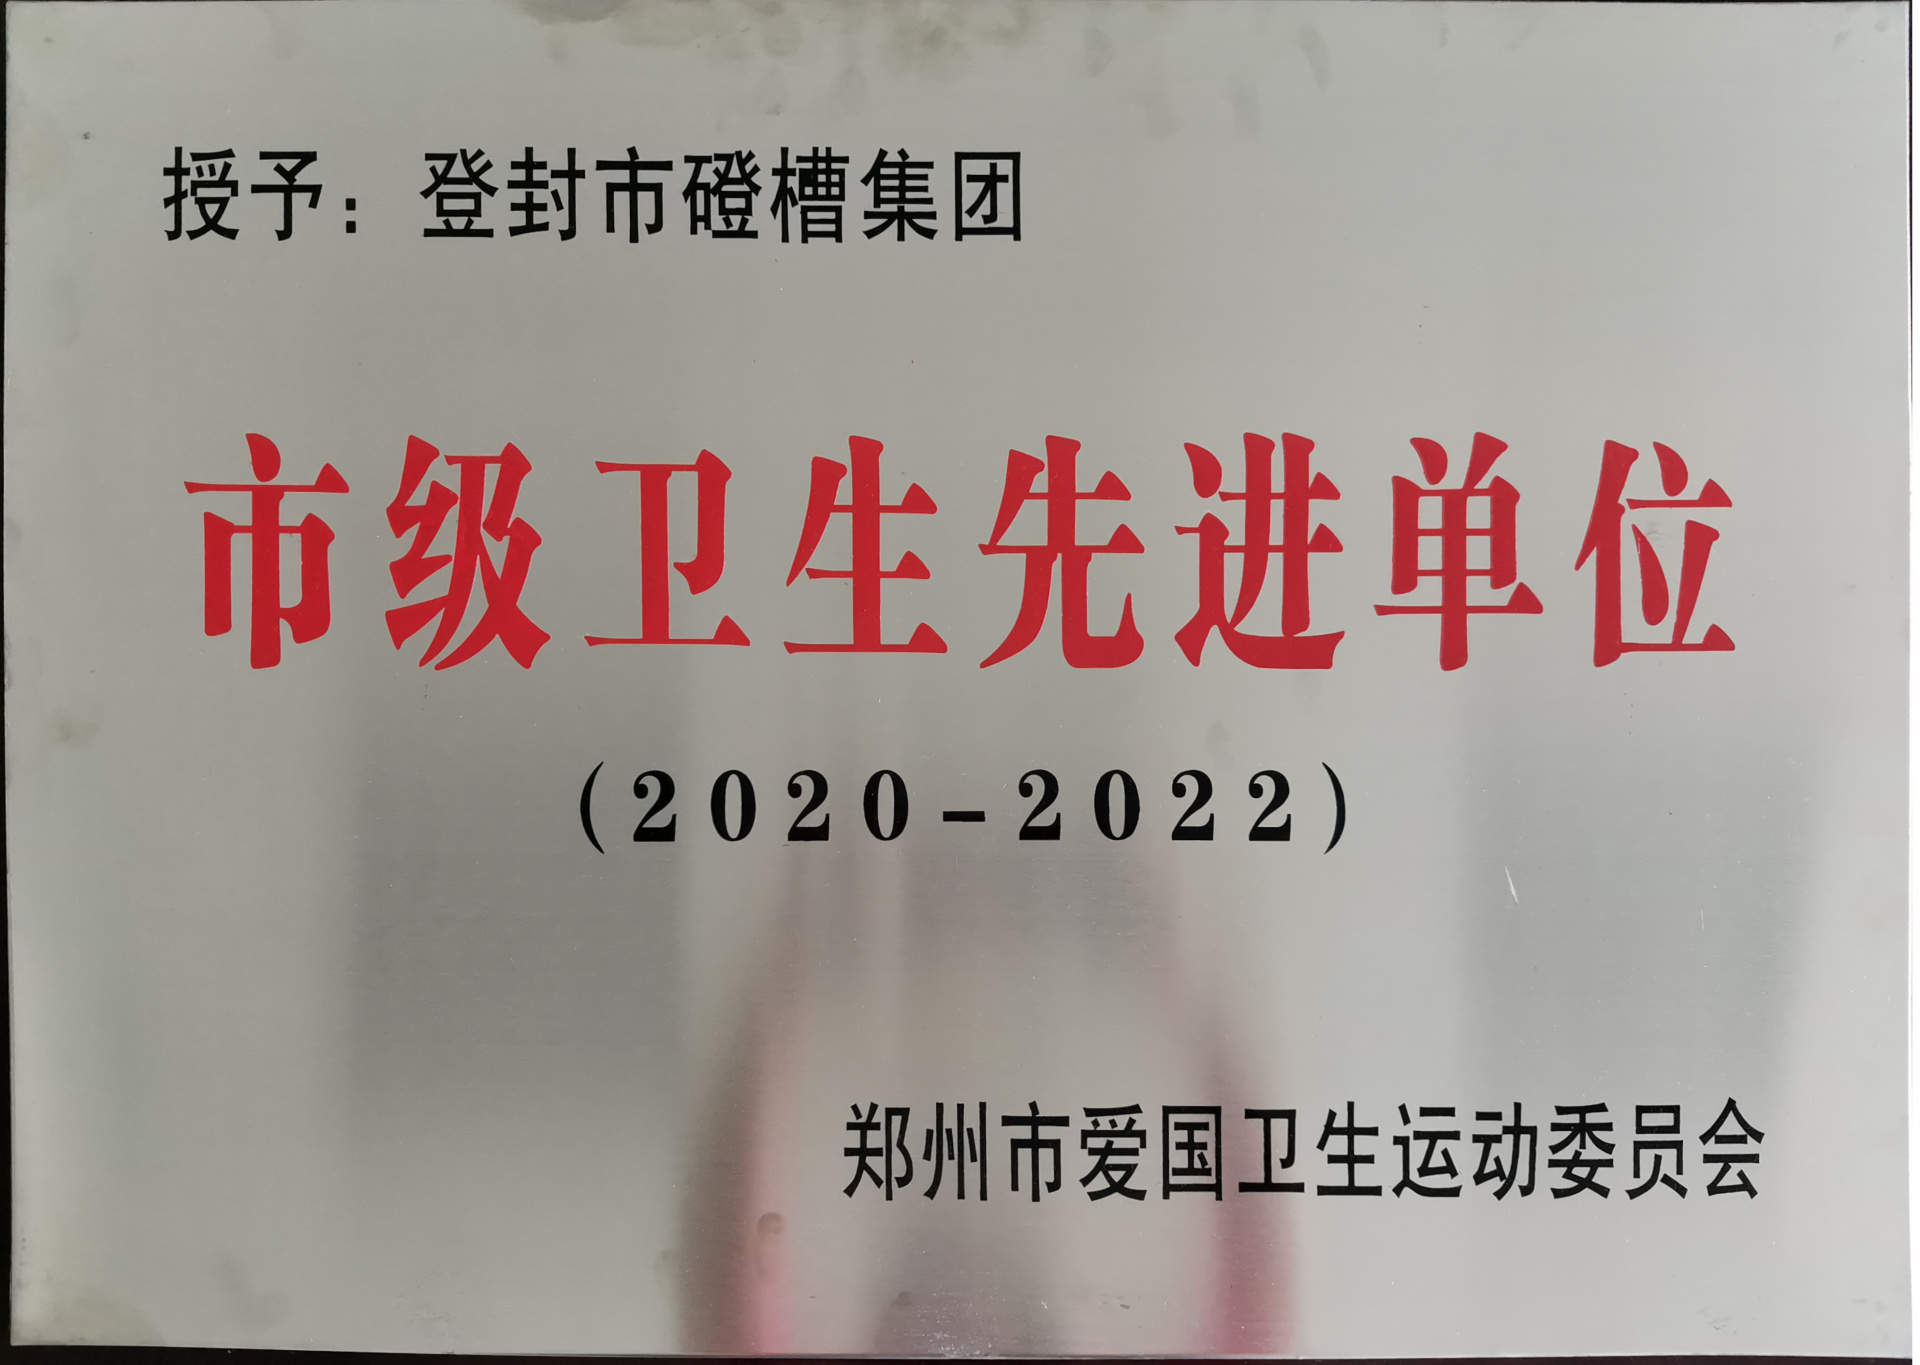 郑州市爱国运动委员会授予2020-2022年“市级卫生先进单位”